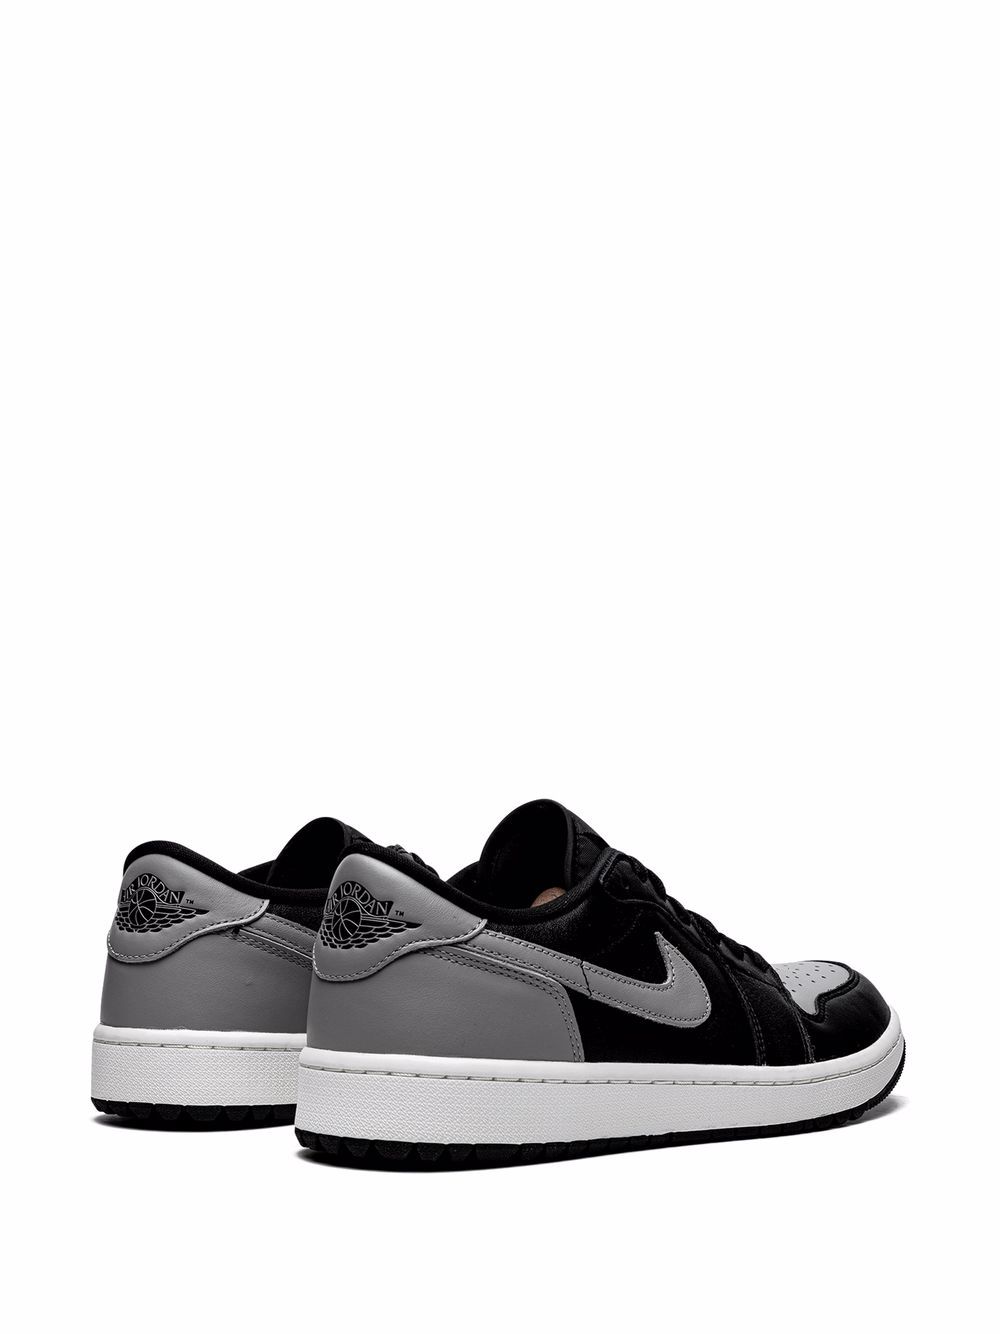  Jordan Air Jordan 1 Low Golf shadow Sneakers - Black 